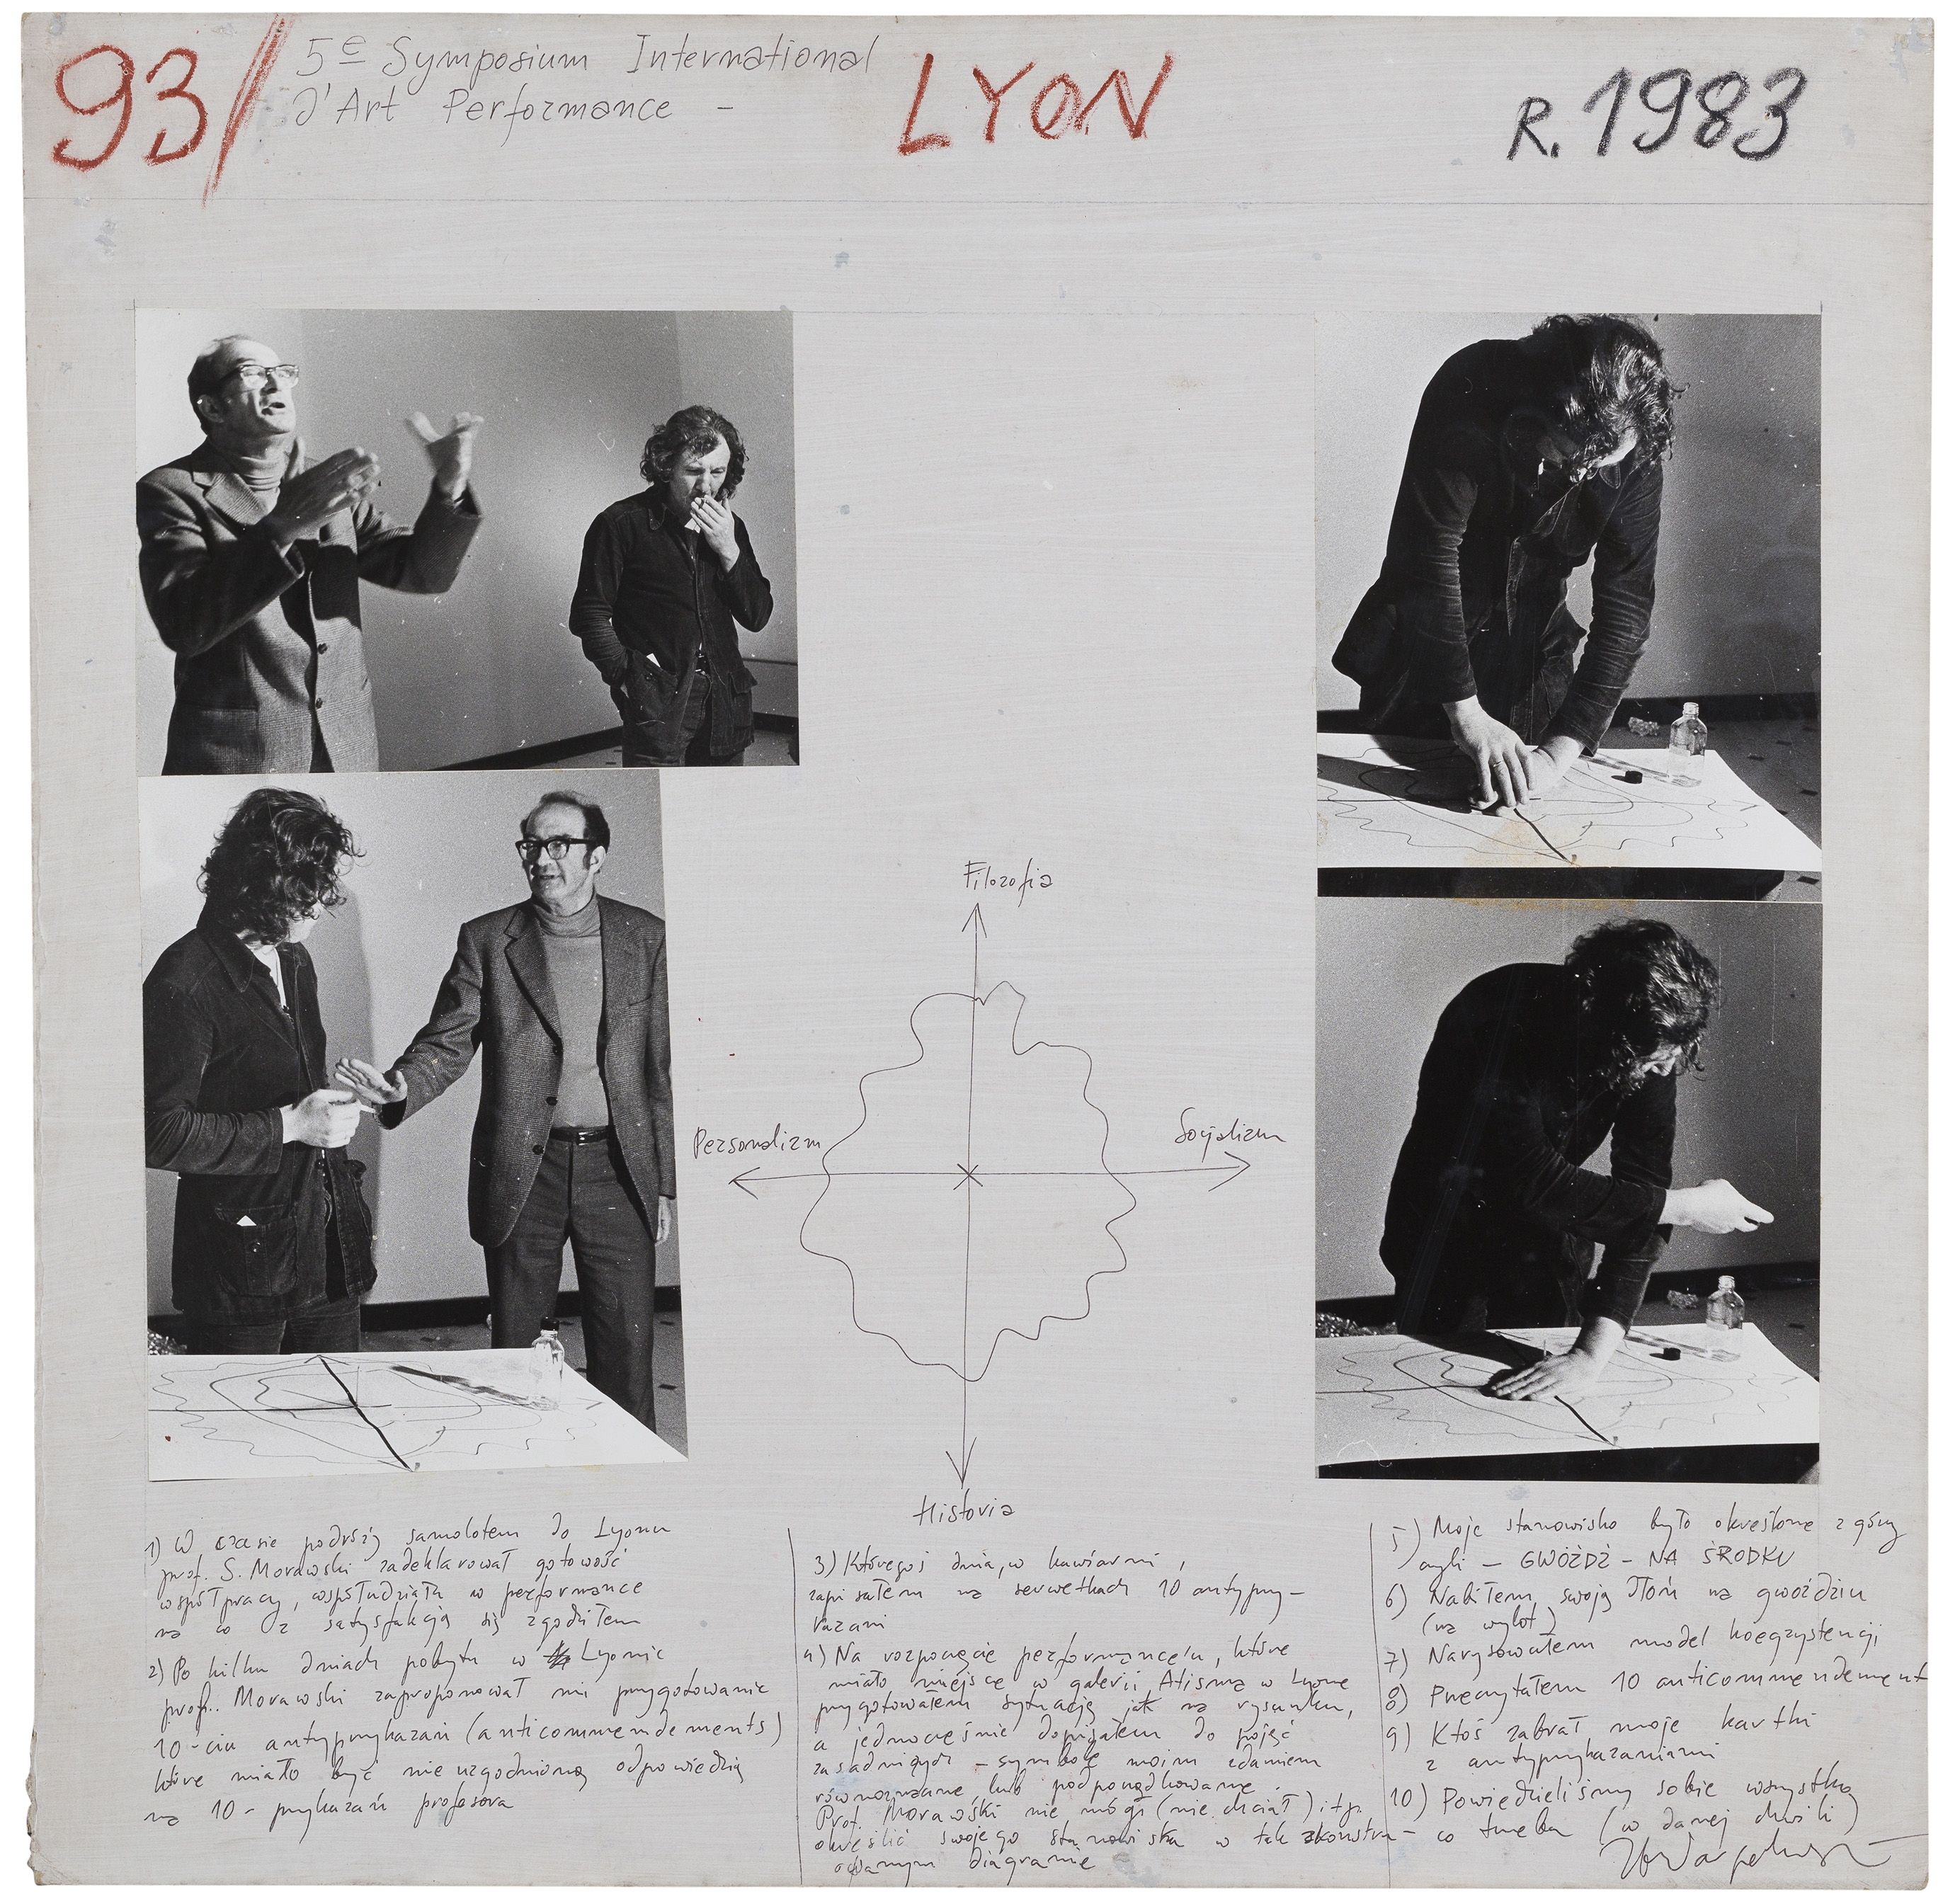 93. 5-e Symposium International d’Art Performance, LYON, 1983